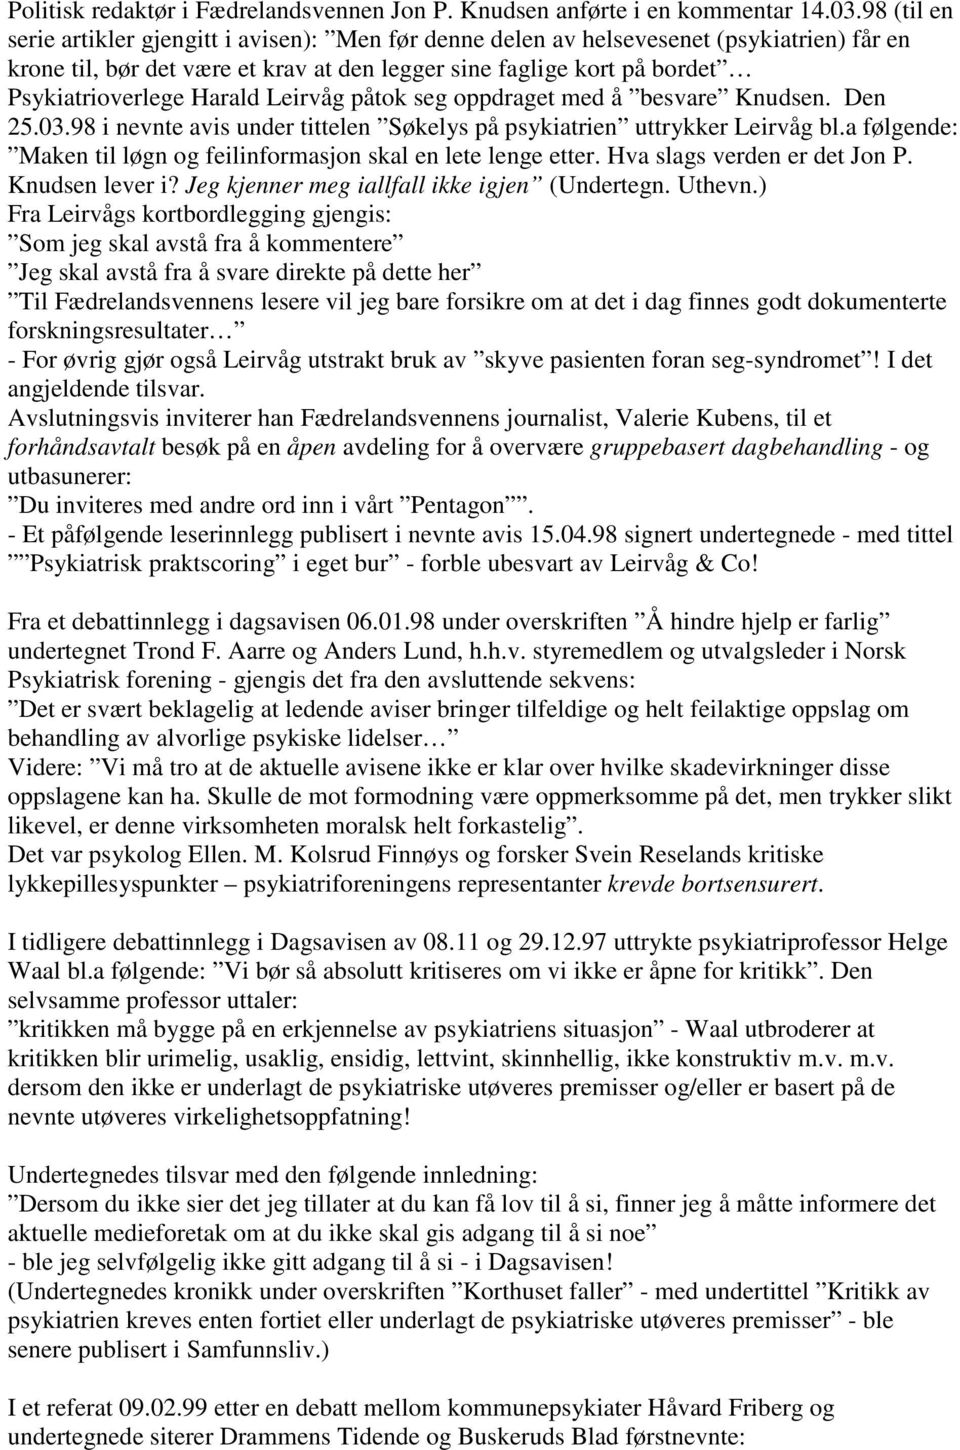 Harald Leirvåg påtok seg oppdraget med å besvare Knudsen. Den 25.03.98 i nevnte avis under tittelen Søkelys på psykiatrien uttrykker Leirvåg bl.